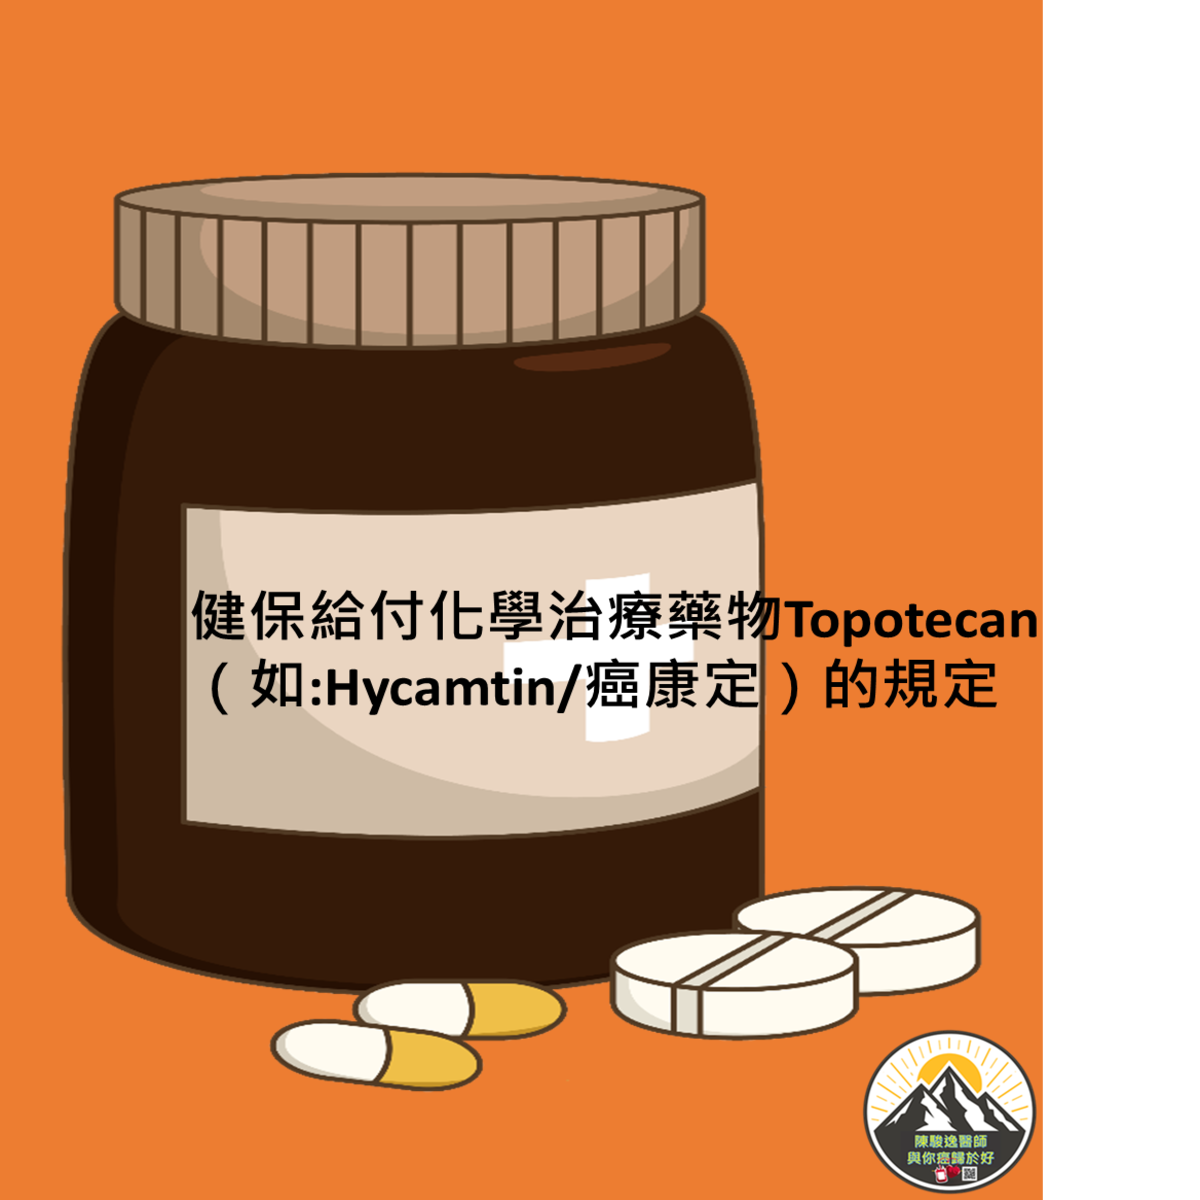 健保給付化學治療藥物Topotecan（如:Hycamtin/癌康定）的規定